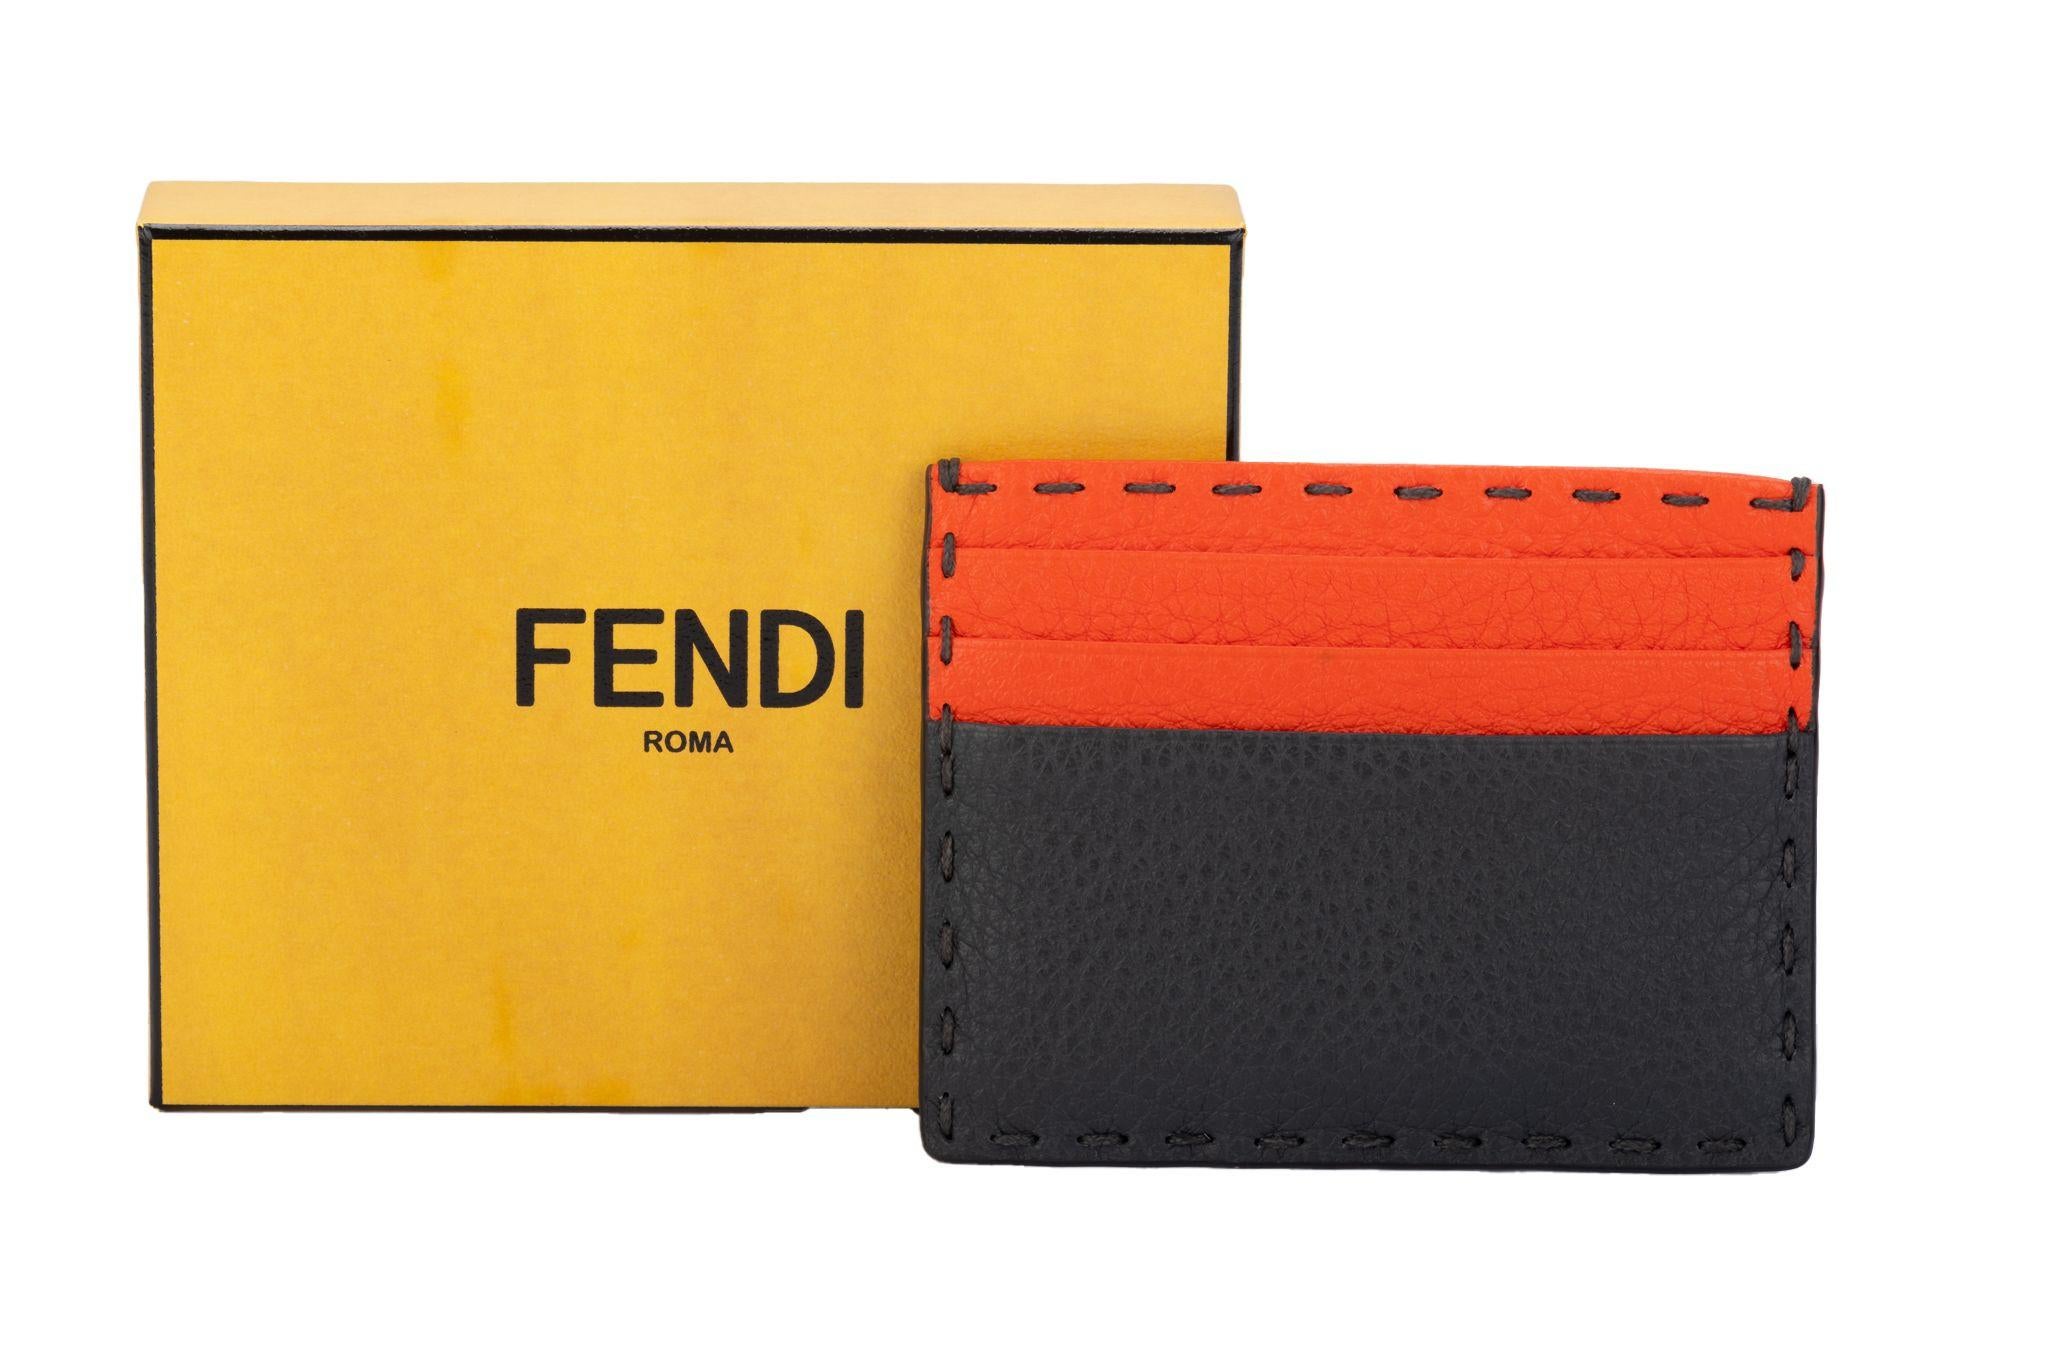 Fendi neue limitierte Auflage selleria Hand genäht zwei Ton Kreditkarte Brieftasche. Graues und korallenrotes Leder. Box und Original-Schutzumschlag.